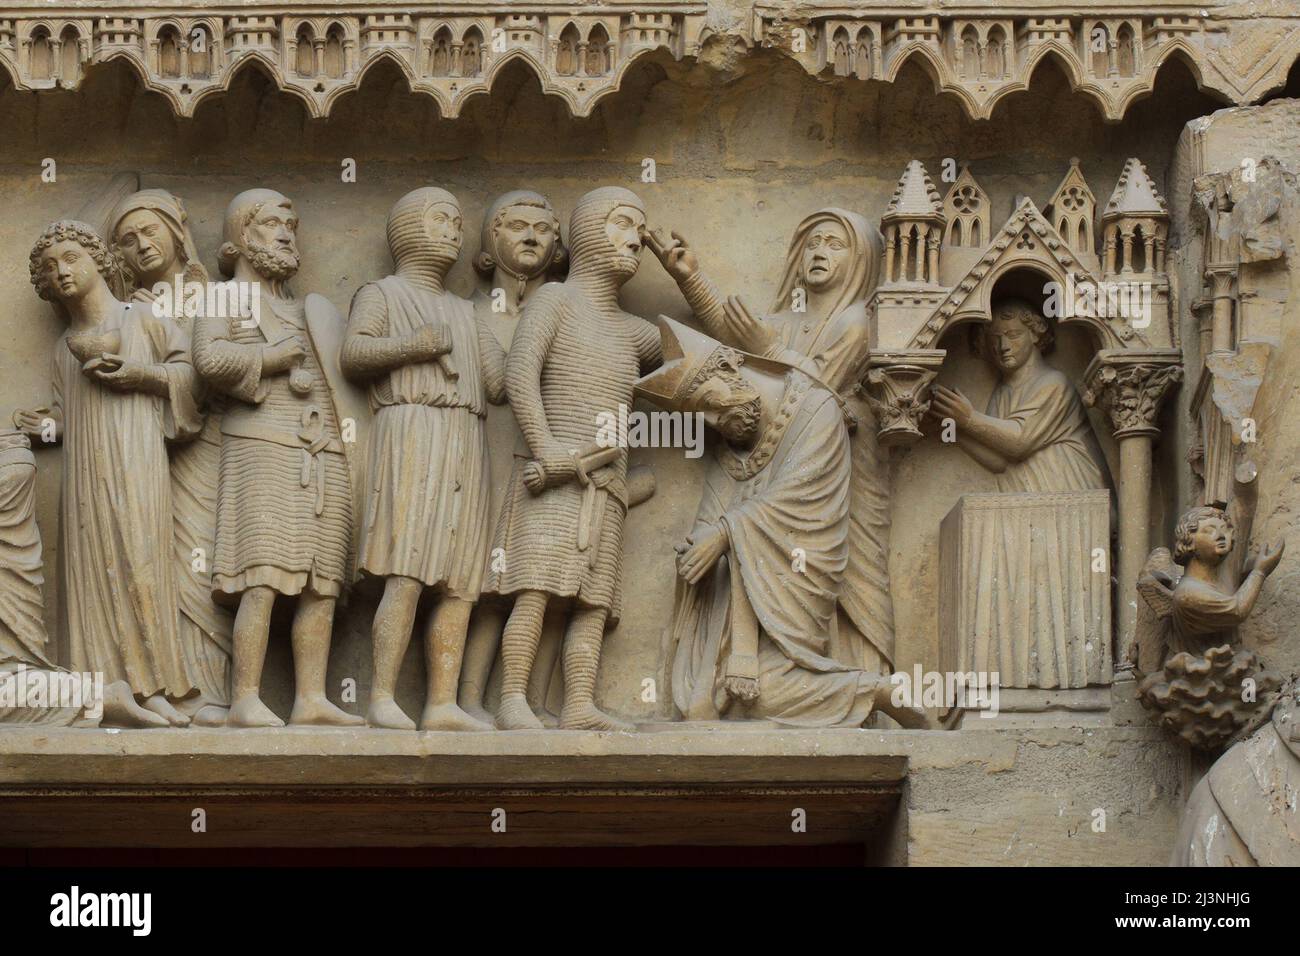 Decapitación de San Nicasio de Reims representado en el tímpano del portal central de la fachada norte de la Catedral de Reims (Cathédrale Notre-Dame de Reims) en Reims, Francia. Foto de stock